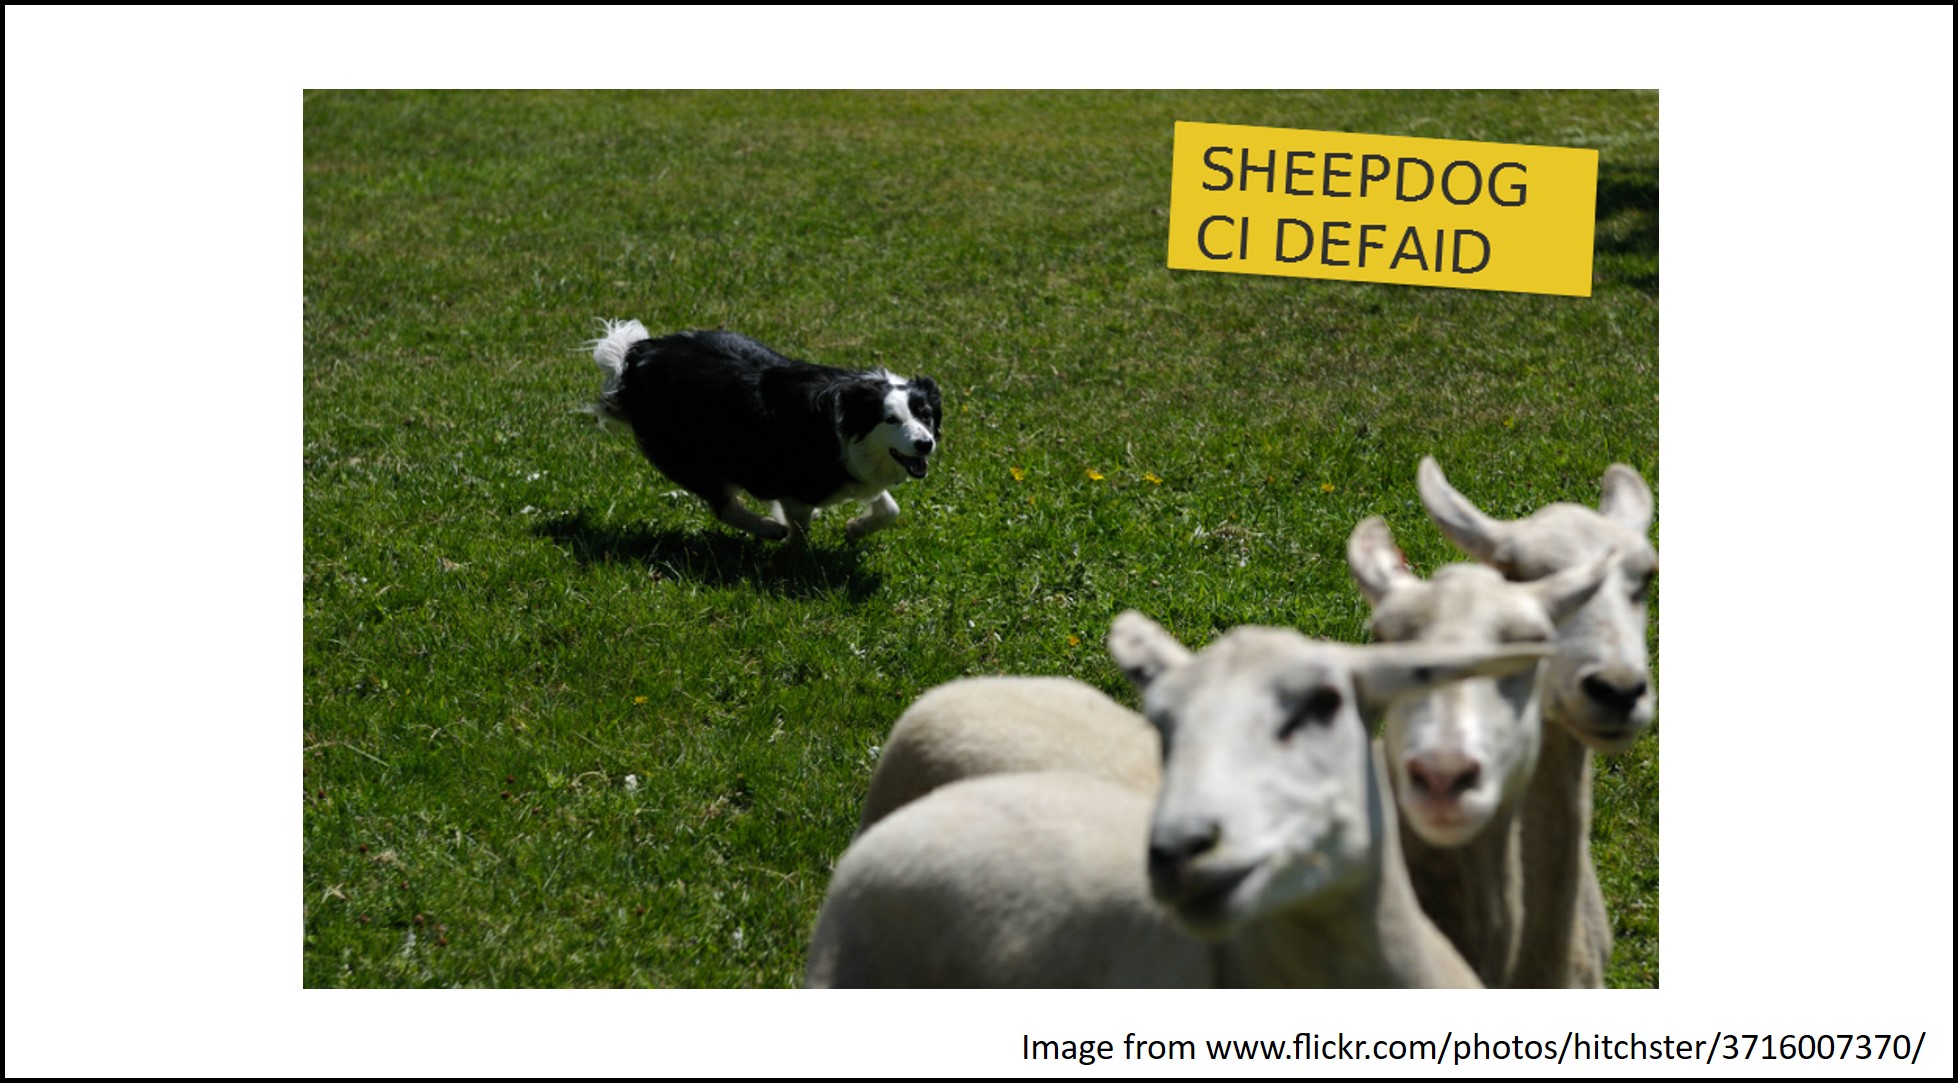 A sheepdog